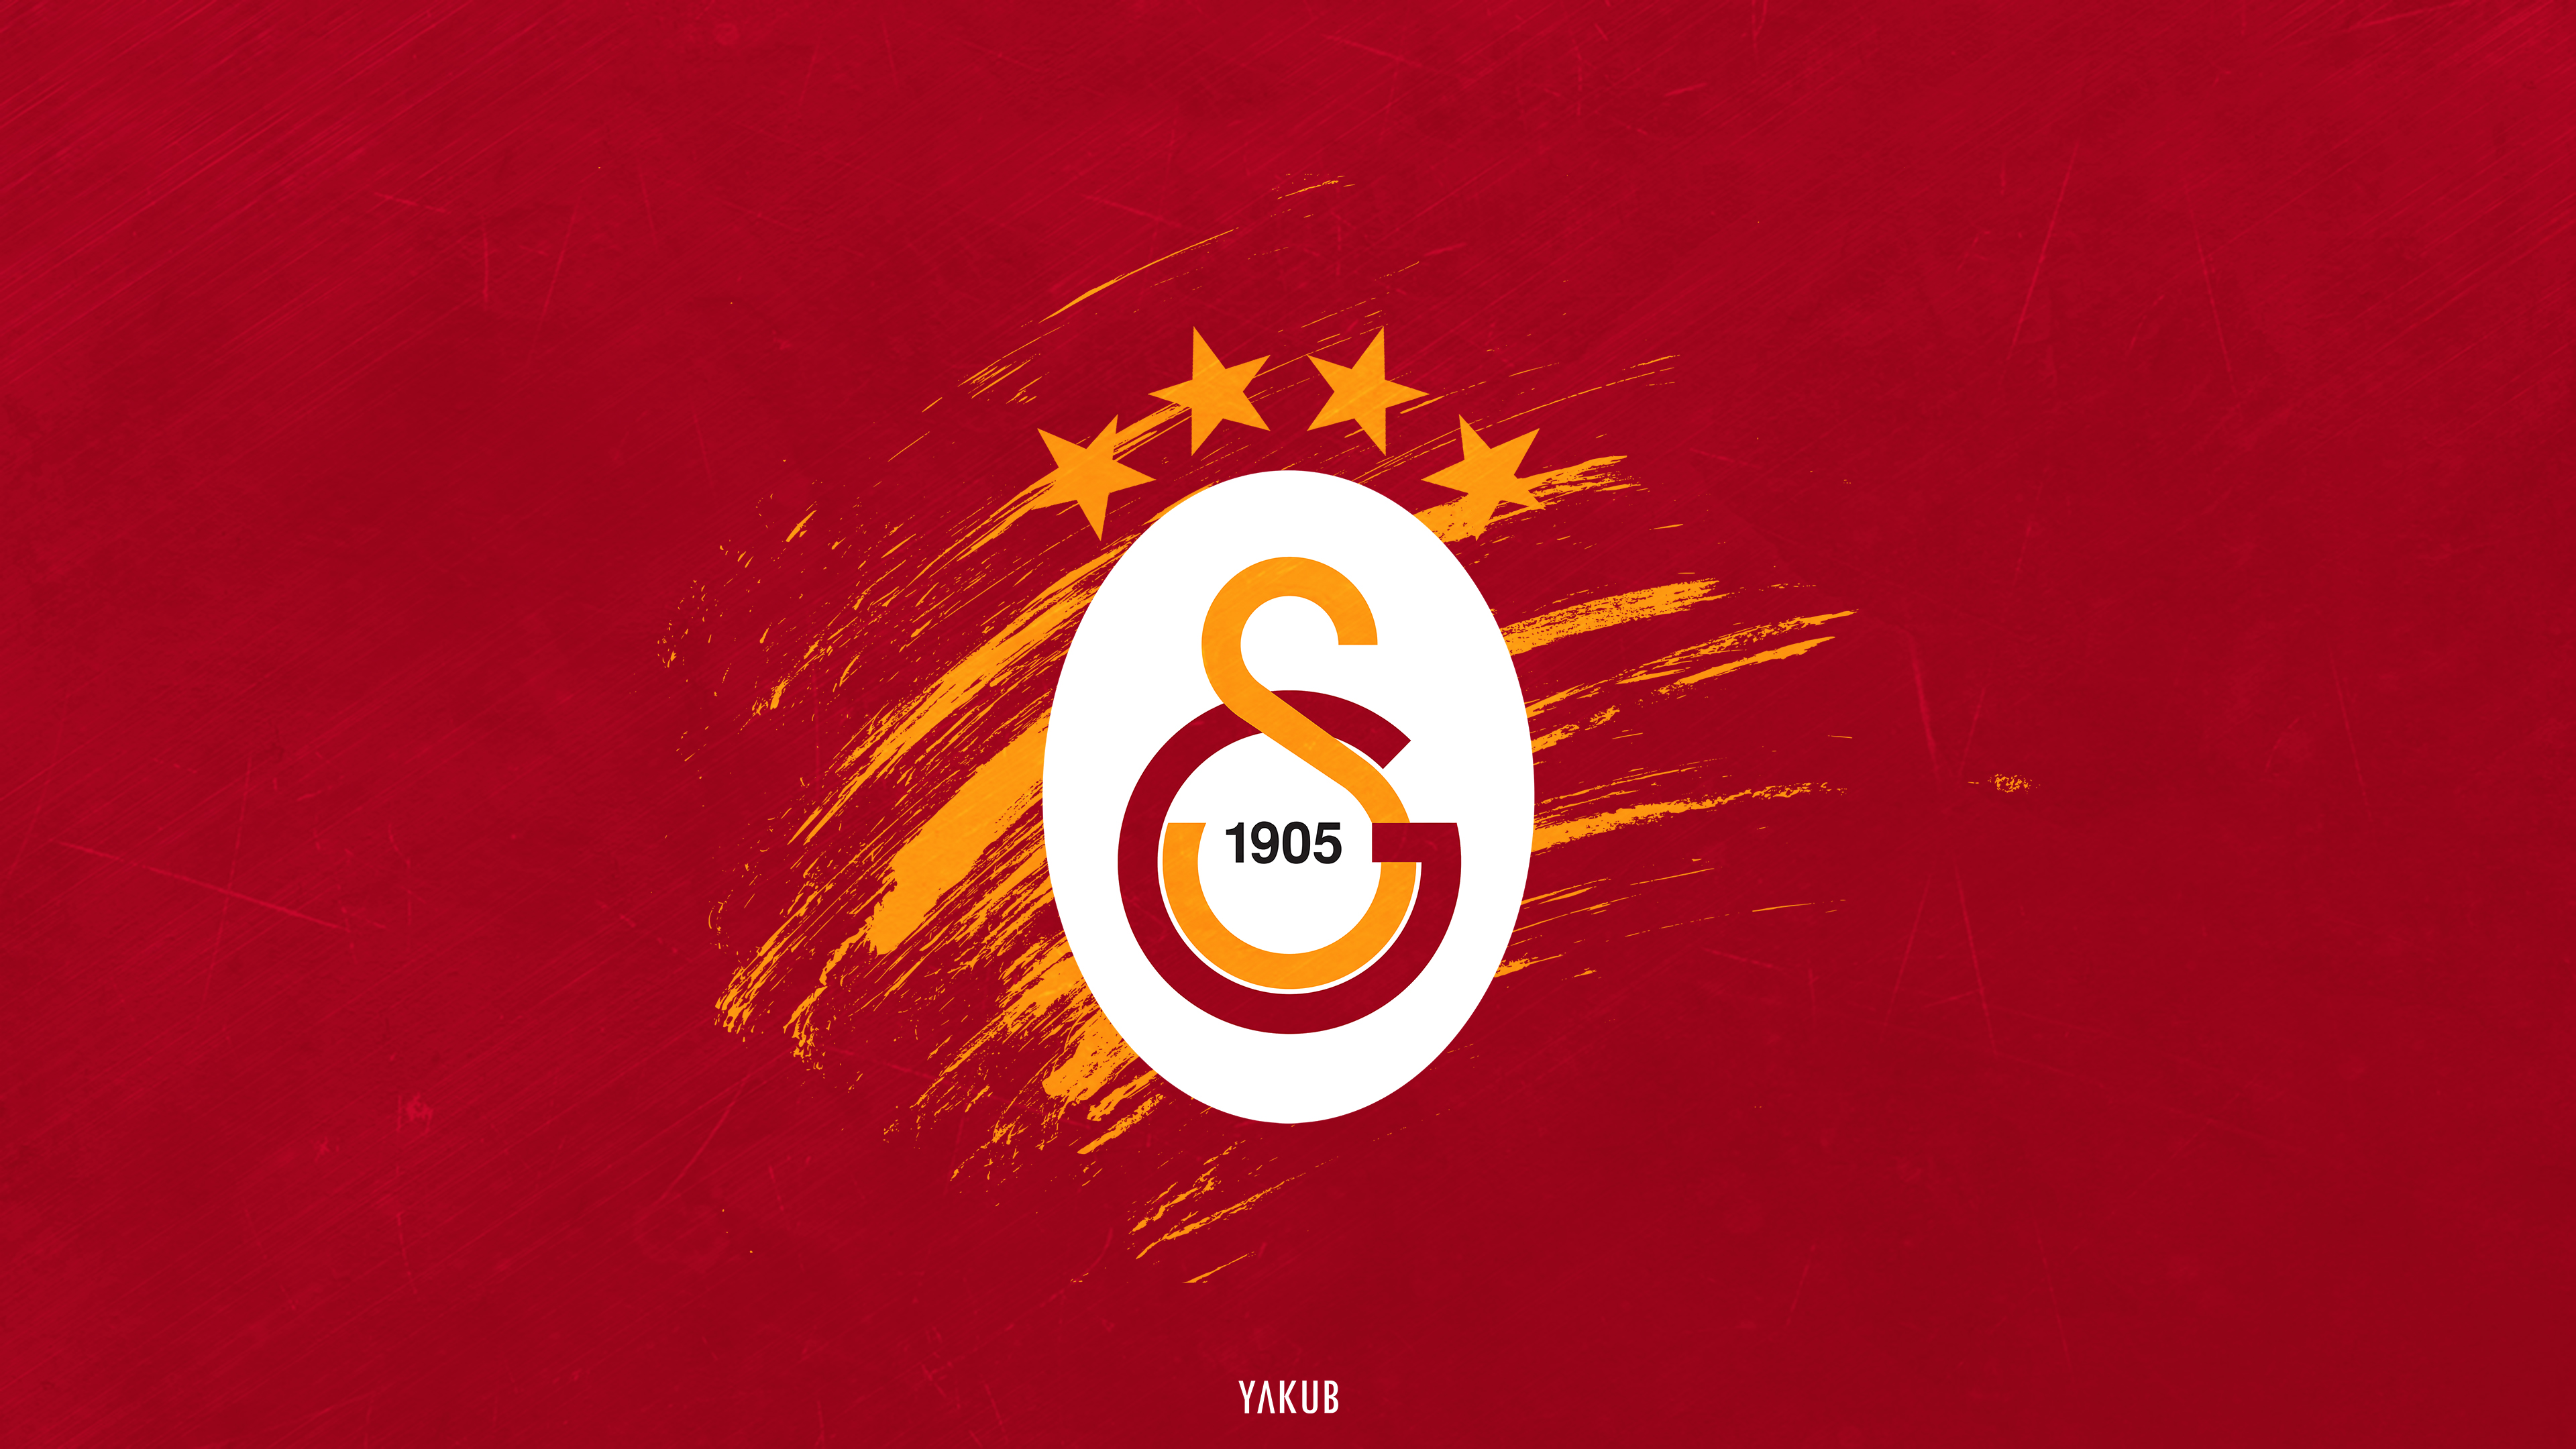 Galatasaray Wallpaper by yakubnihat on DeviantArt